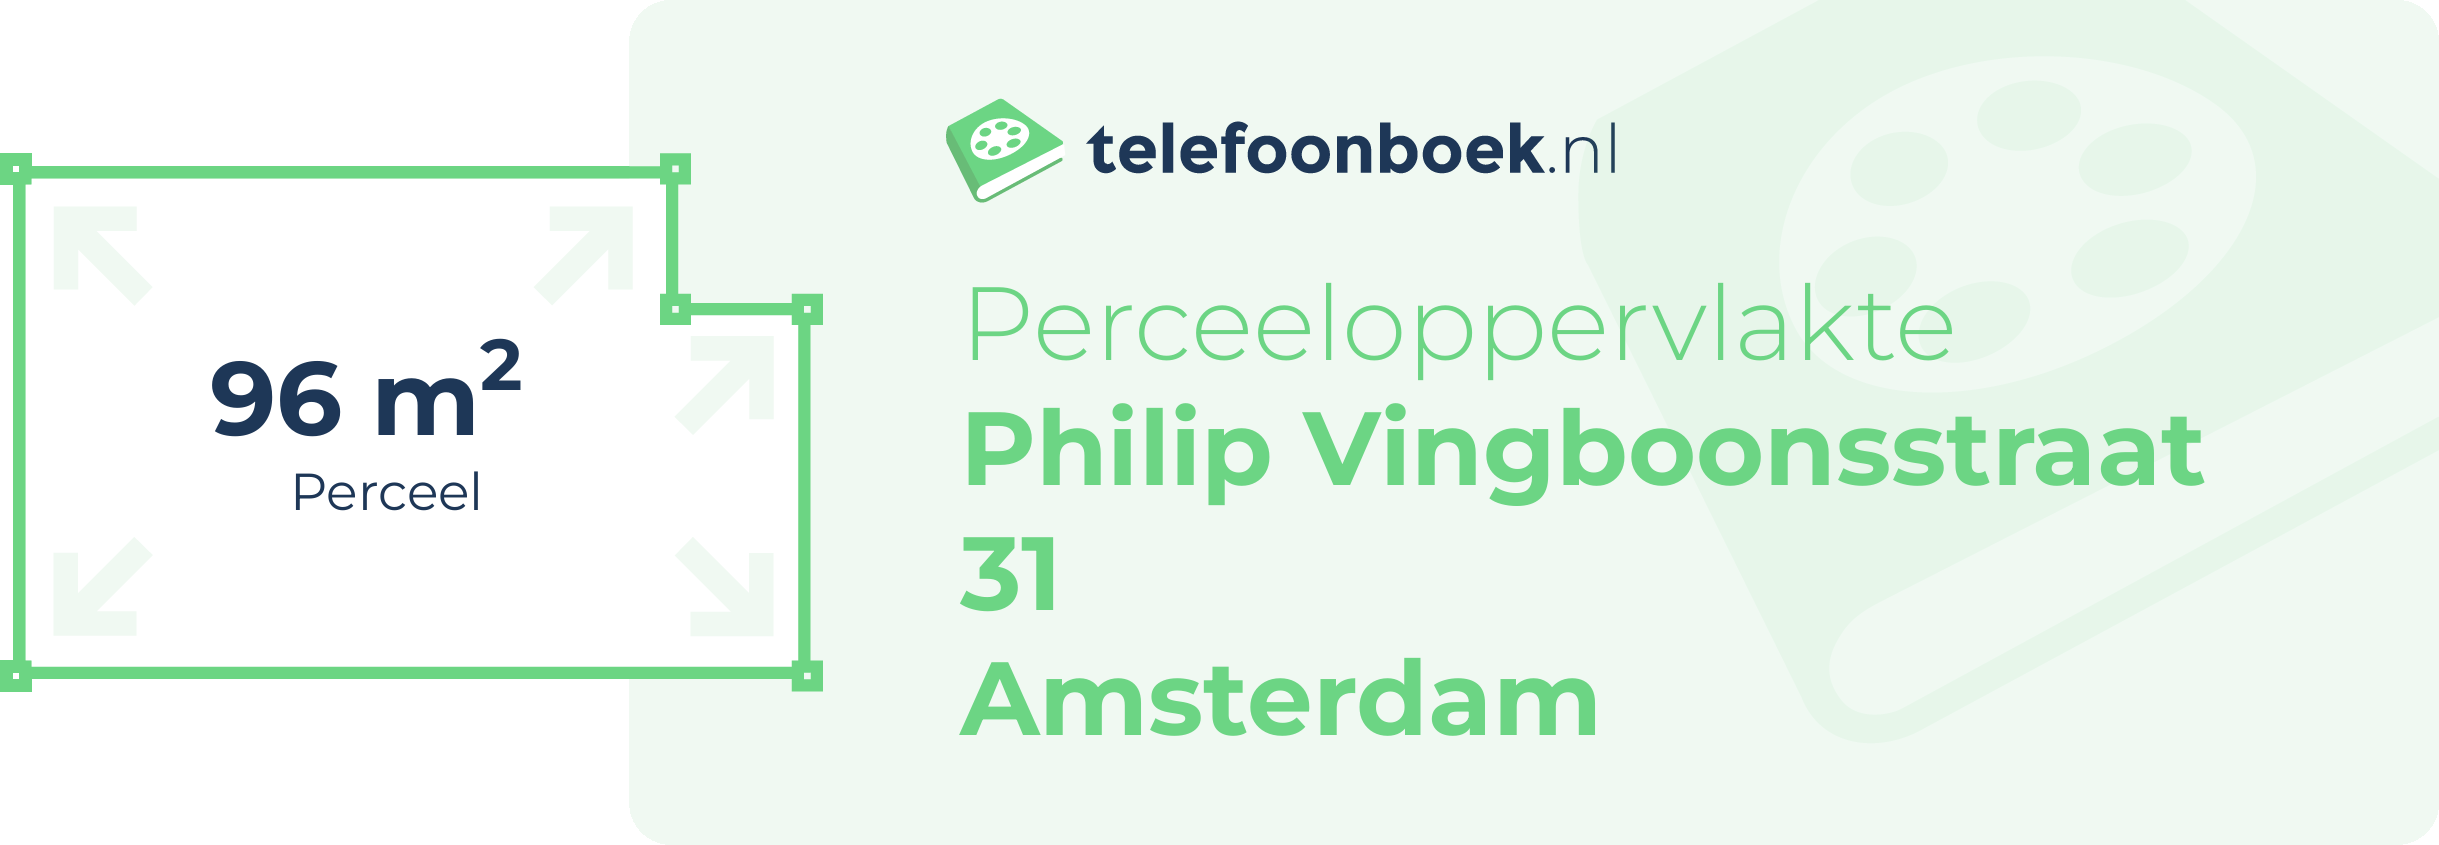 Perceeloppervlakte Philip Vingboonsstraat 31 Amsterdam